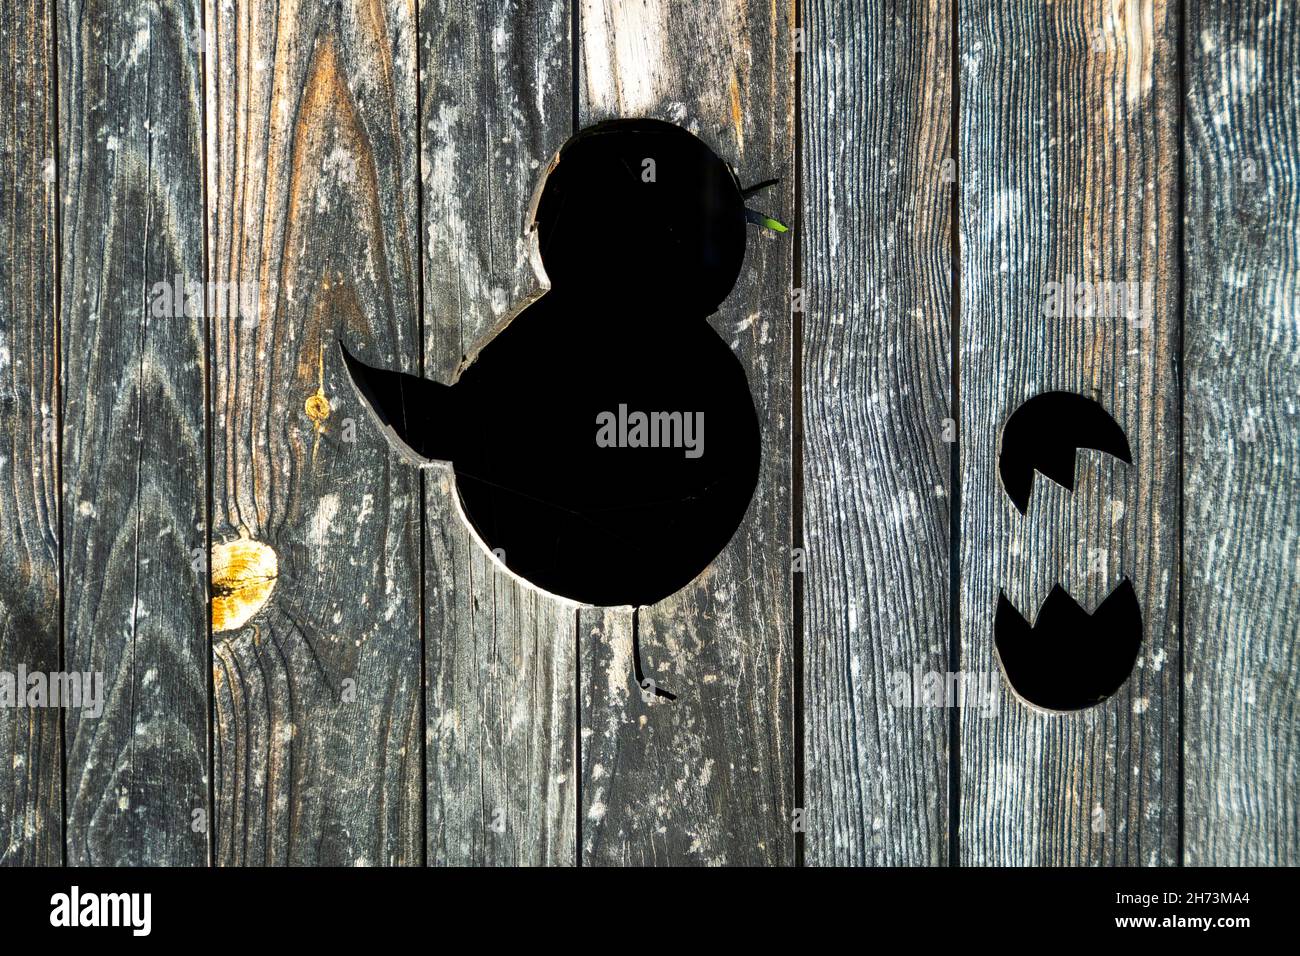 Pulcino (rappresentazione animale) su una porta di legno. Auvergne Rhone Alpes. Francia Foto Stock